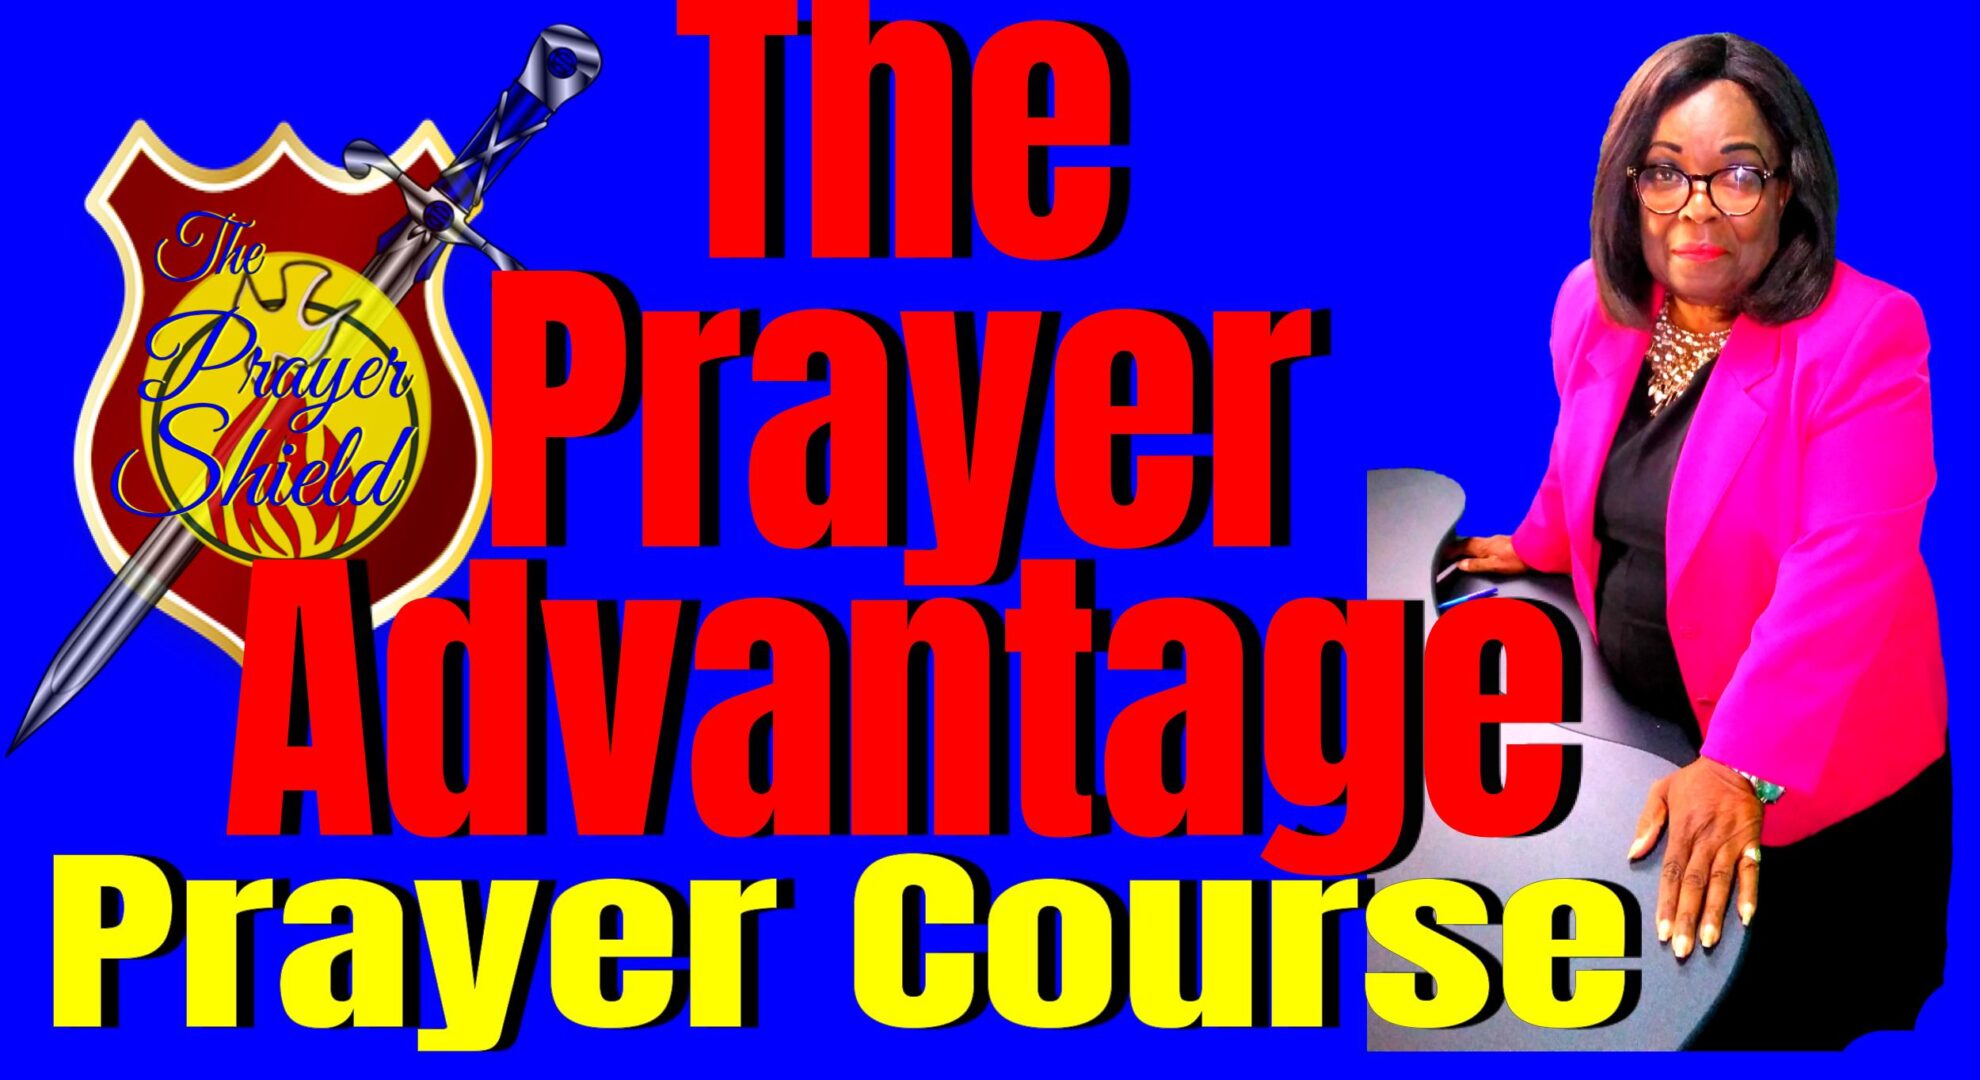 Teaching Healing Prayer Course - Image